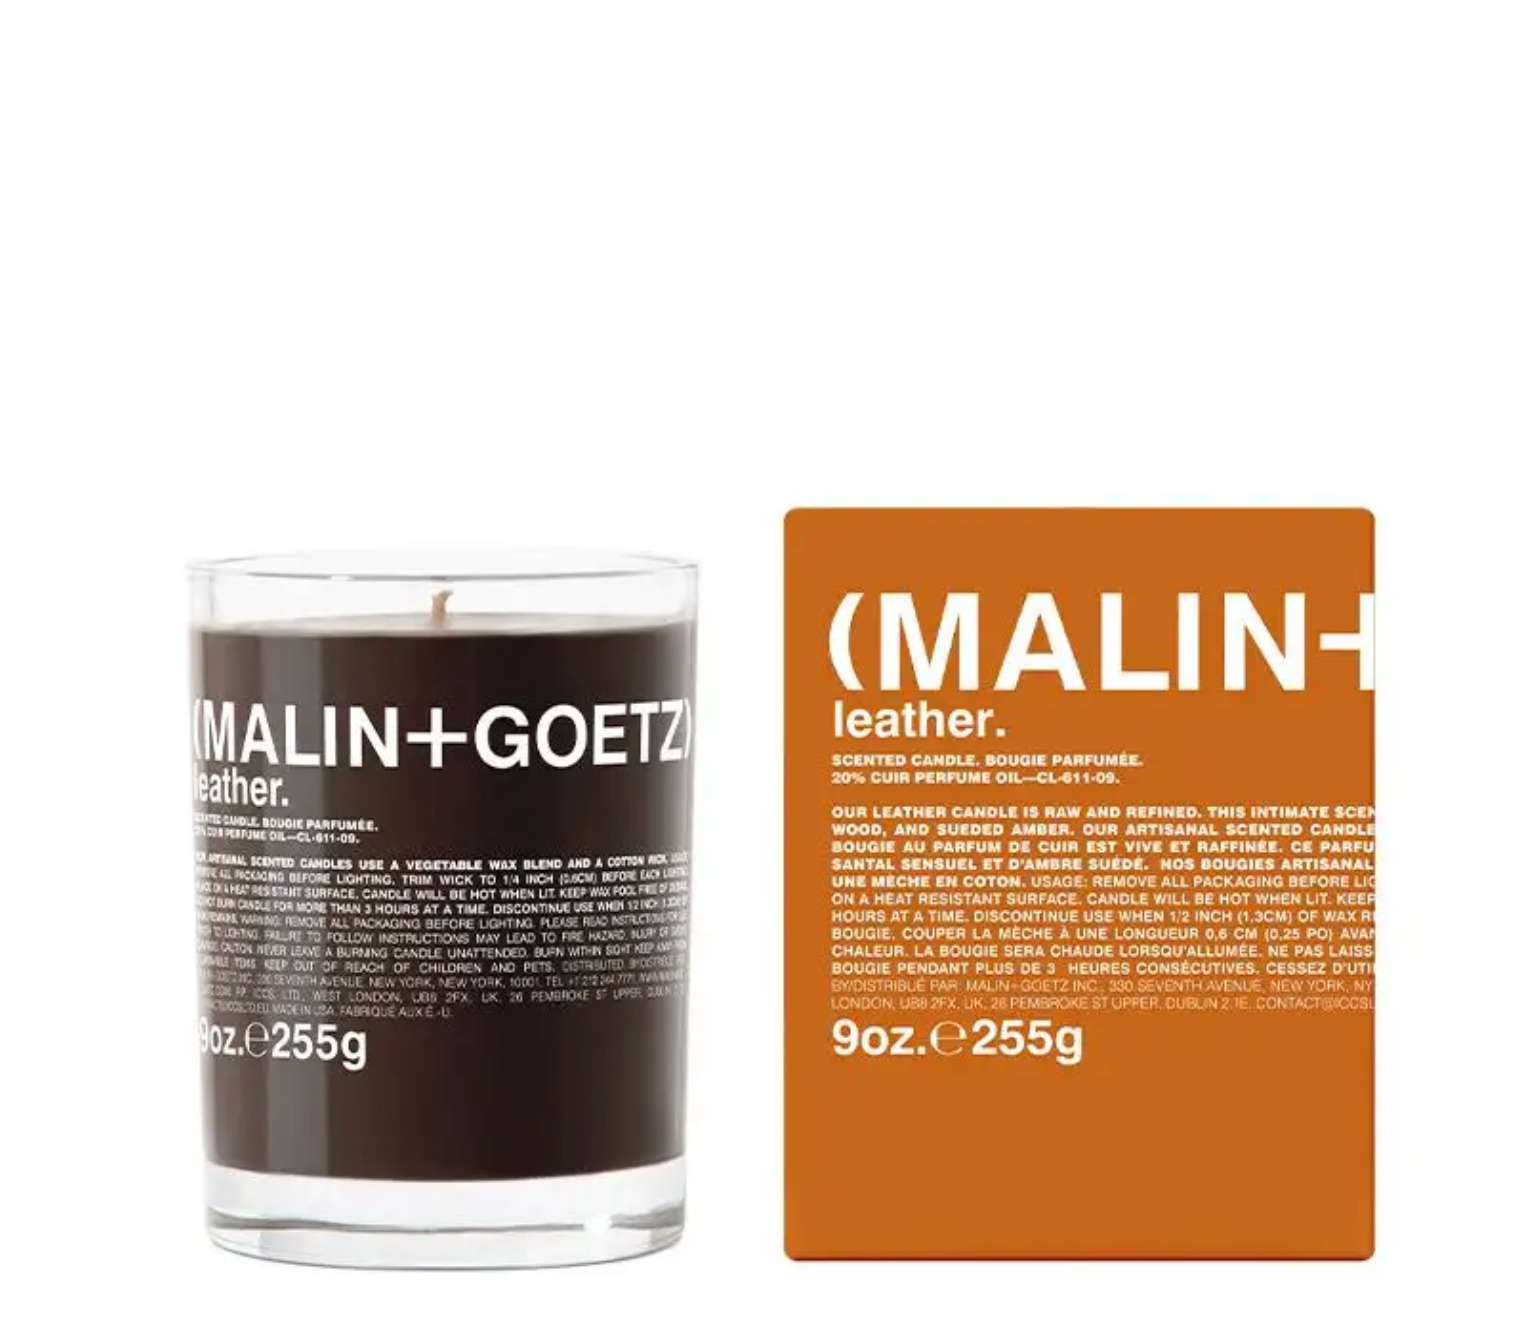 Malin + Goetz Candle